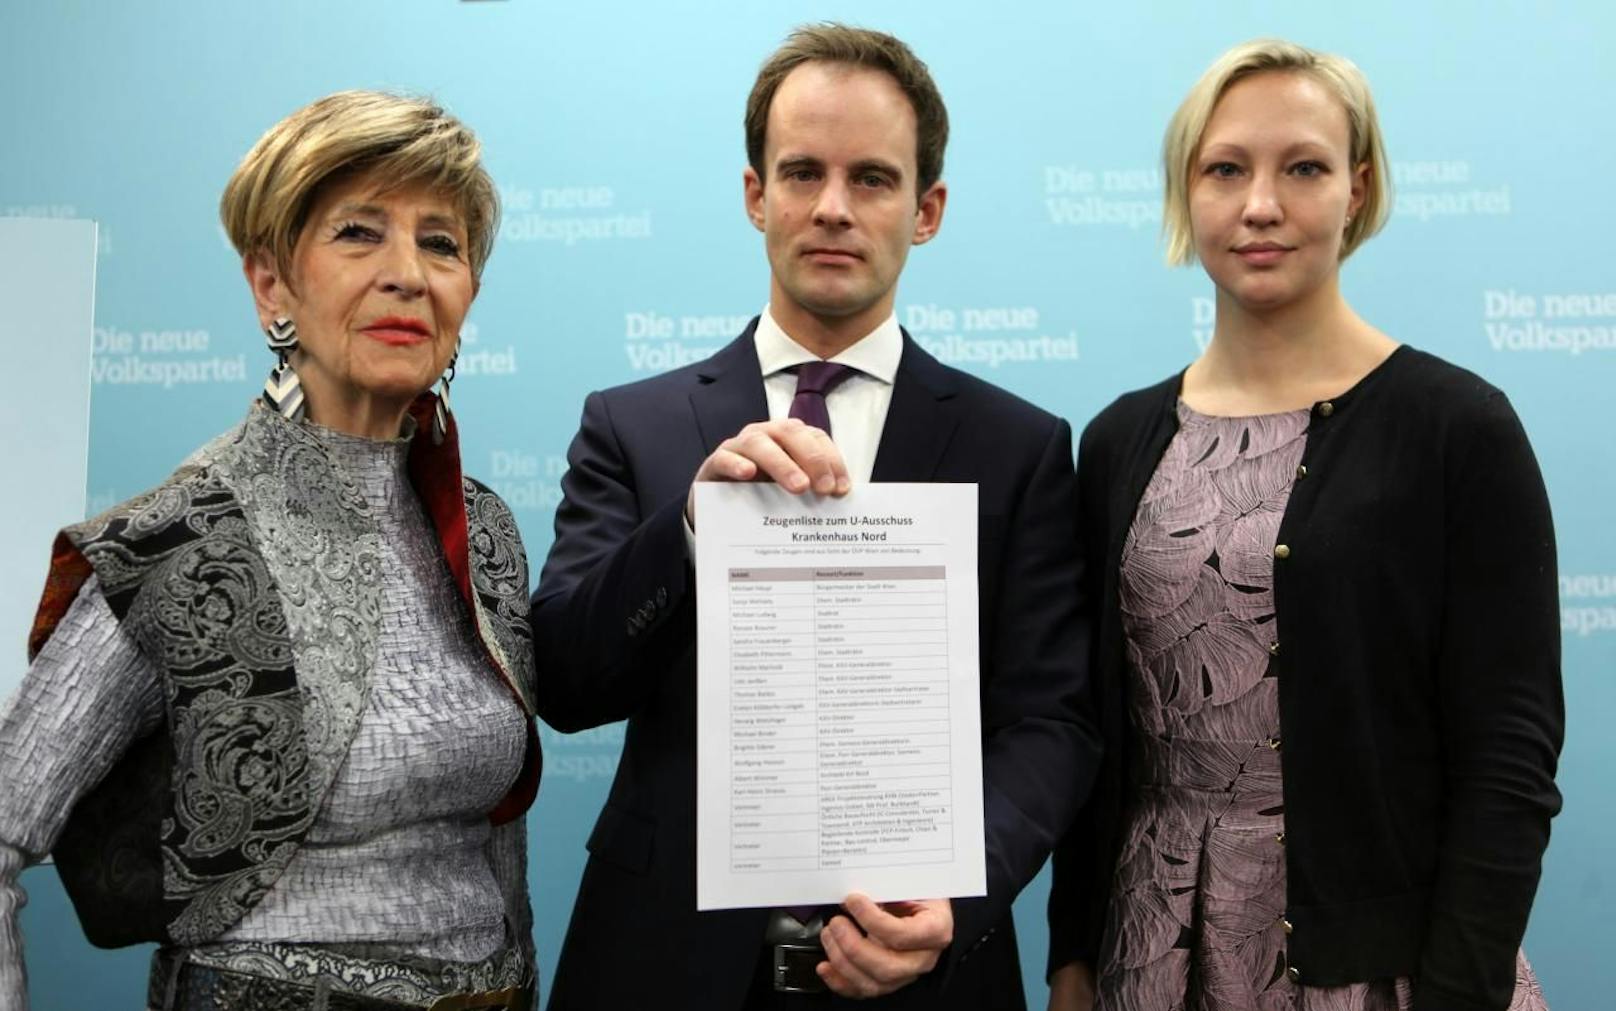 Die ÖVP Wien-Politiker Ingrid Korosec, Markus Wölbitsch und Caroline Hungerländer (v.l.n.r.) wollen die Wiener in die Untersuchung zum Krankenhaus Nord einbeziehen.(c) ÖVP Wien